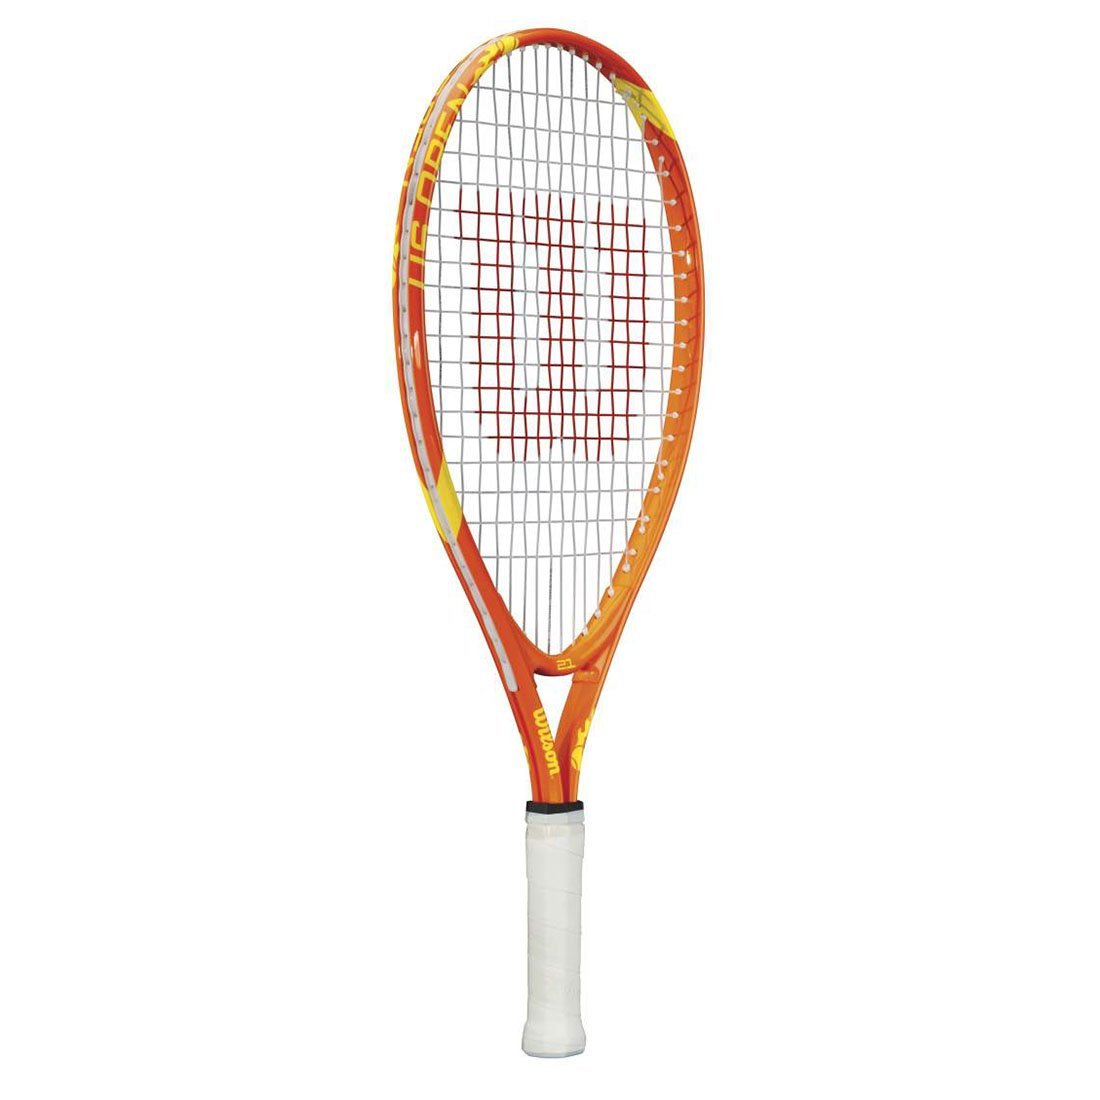 Amazon.com : Wilson US Open Junior Tennis Racket, 19-Inch : Tennis ...